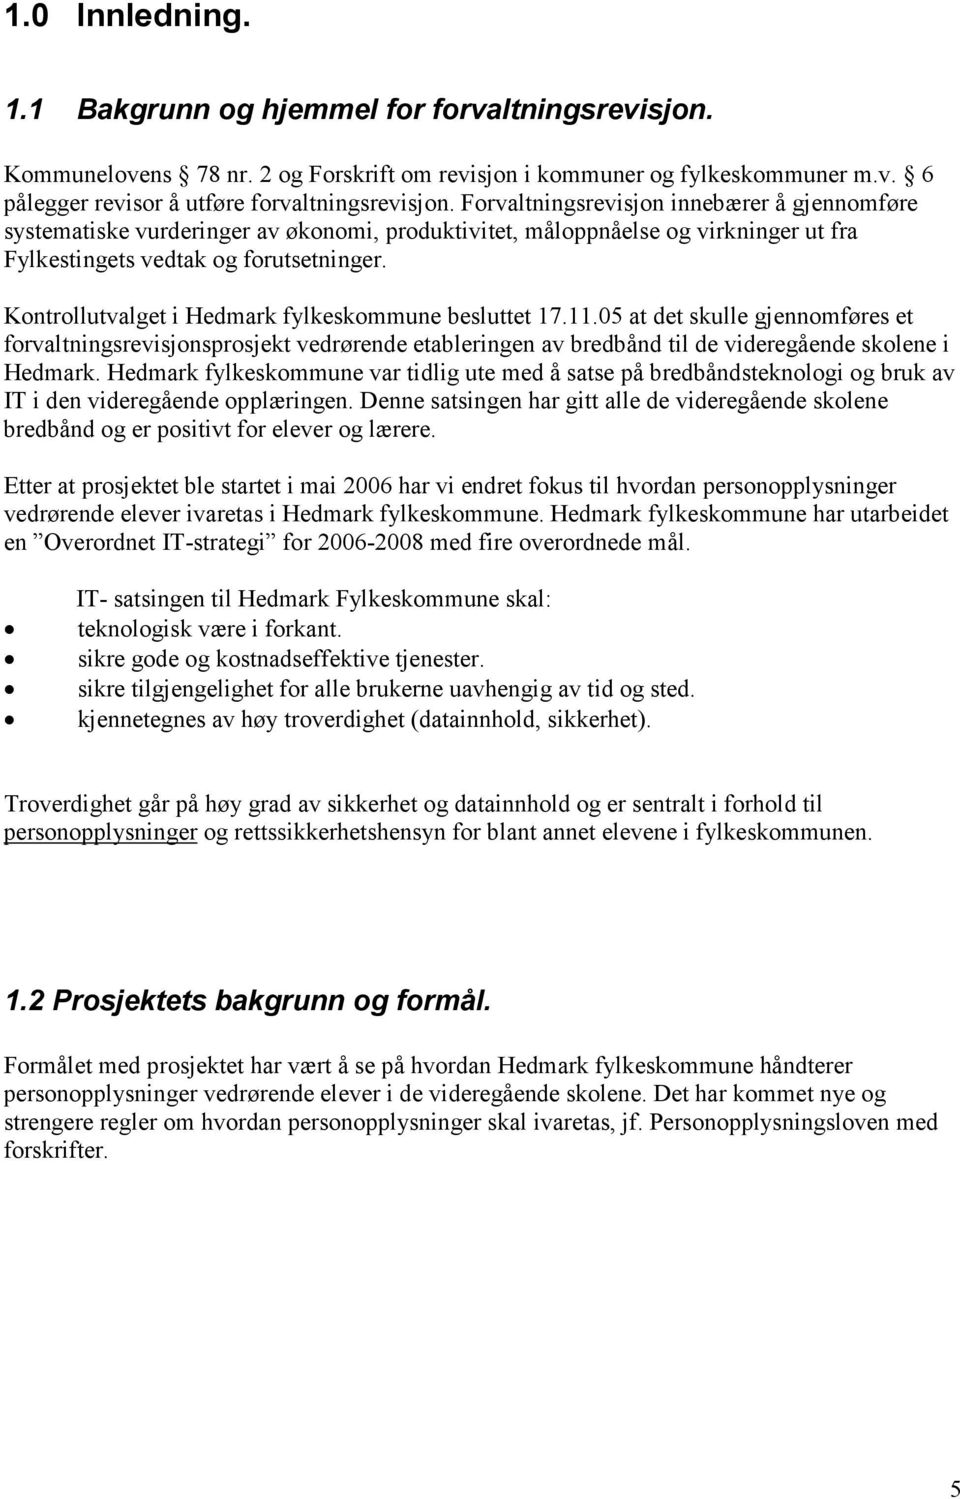 Kontrollutvalget i Hedmark fylkeskommune besluttet 17.11.05 at det skulle gjennomføres et forvaltningsrevisjonsprosjekt vedrørende etableringen av bredbånd til de videregående skolene i Hedmark.